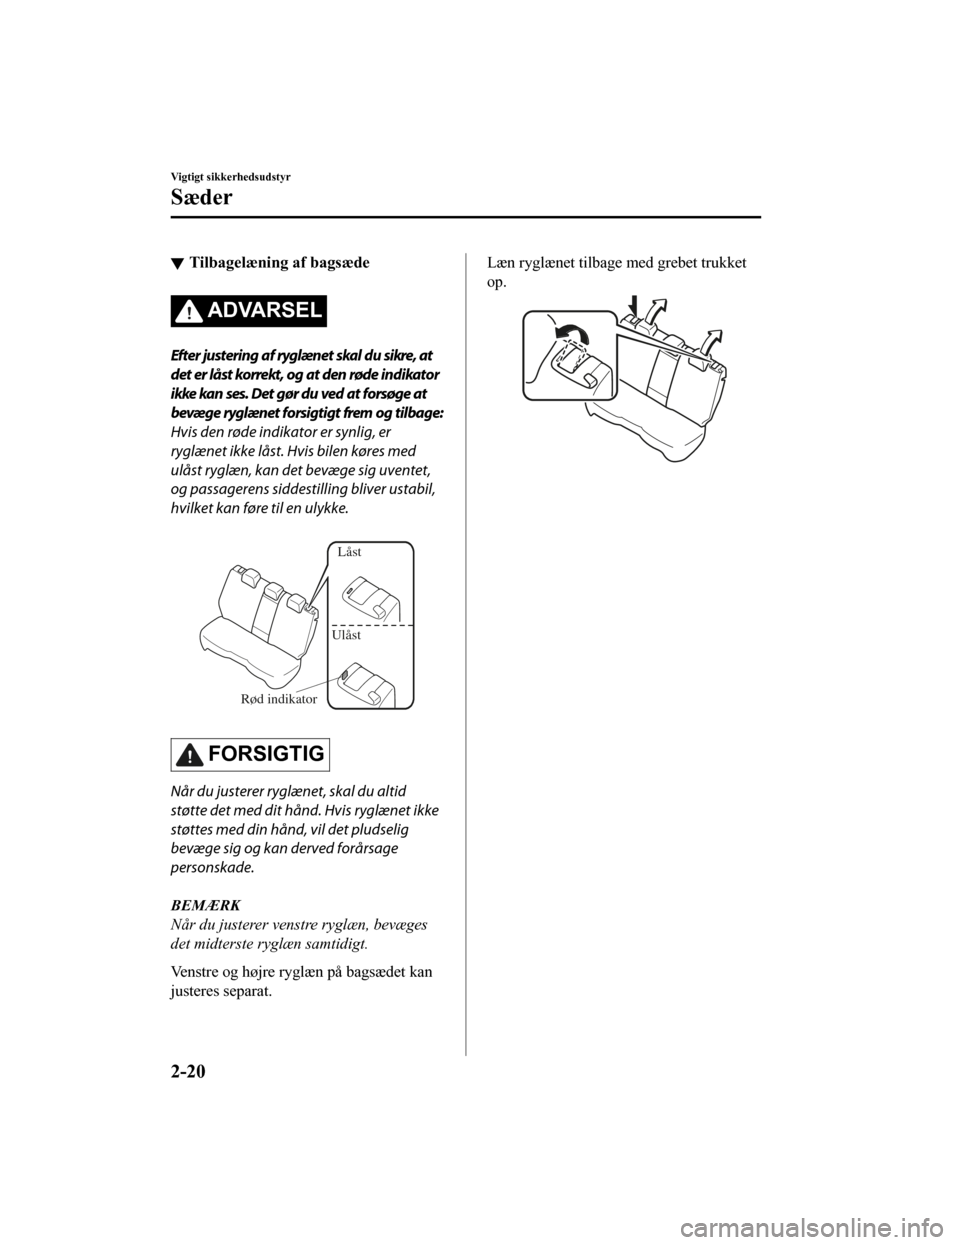 MAZDA MODEL CX-5 2019  Instruktionsbog (in Danish) Tilbagelæning af bagsæde
ADVARSEL
Efter justering af ryglænet skal du sikre, at
det er låst korrekt, og at den røde indikator
ikke kan ses. Det gør du ved at forsøge at
bevæge ryglænet forsig